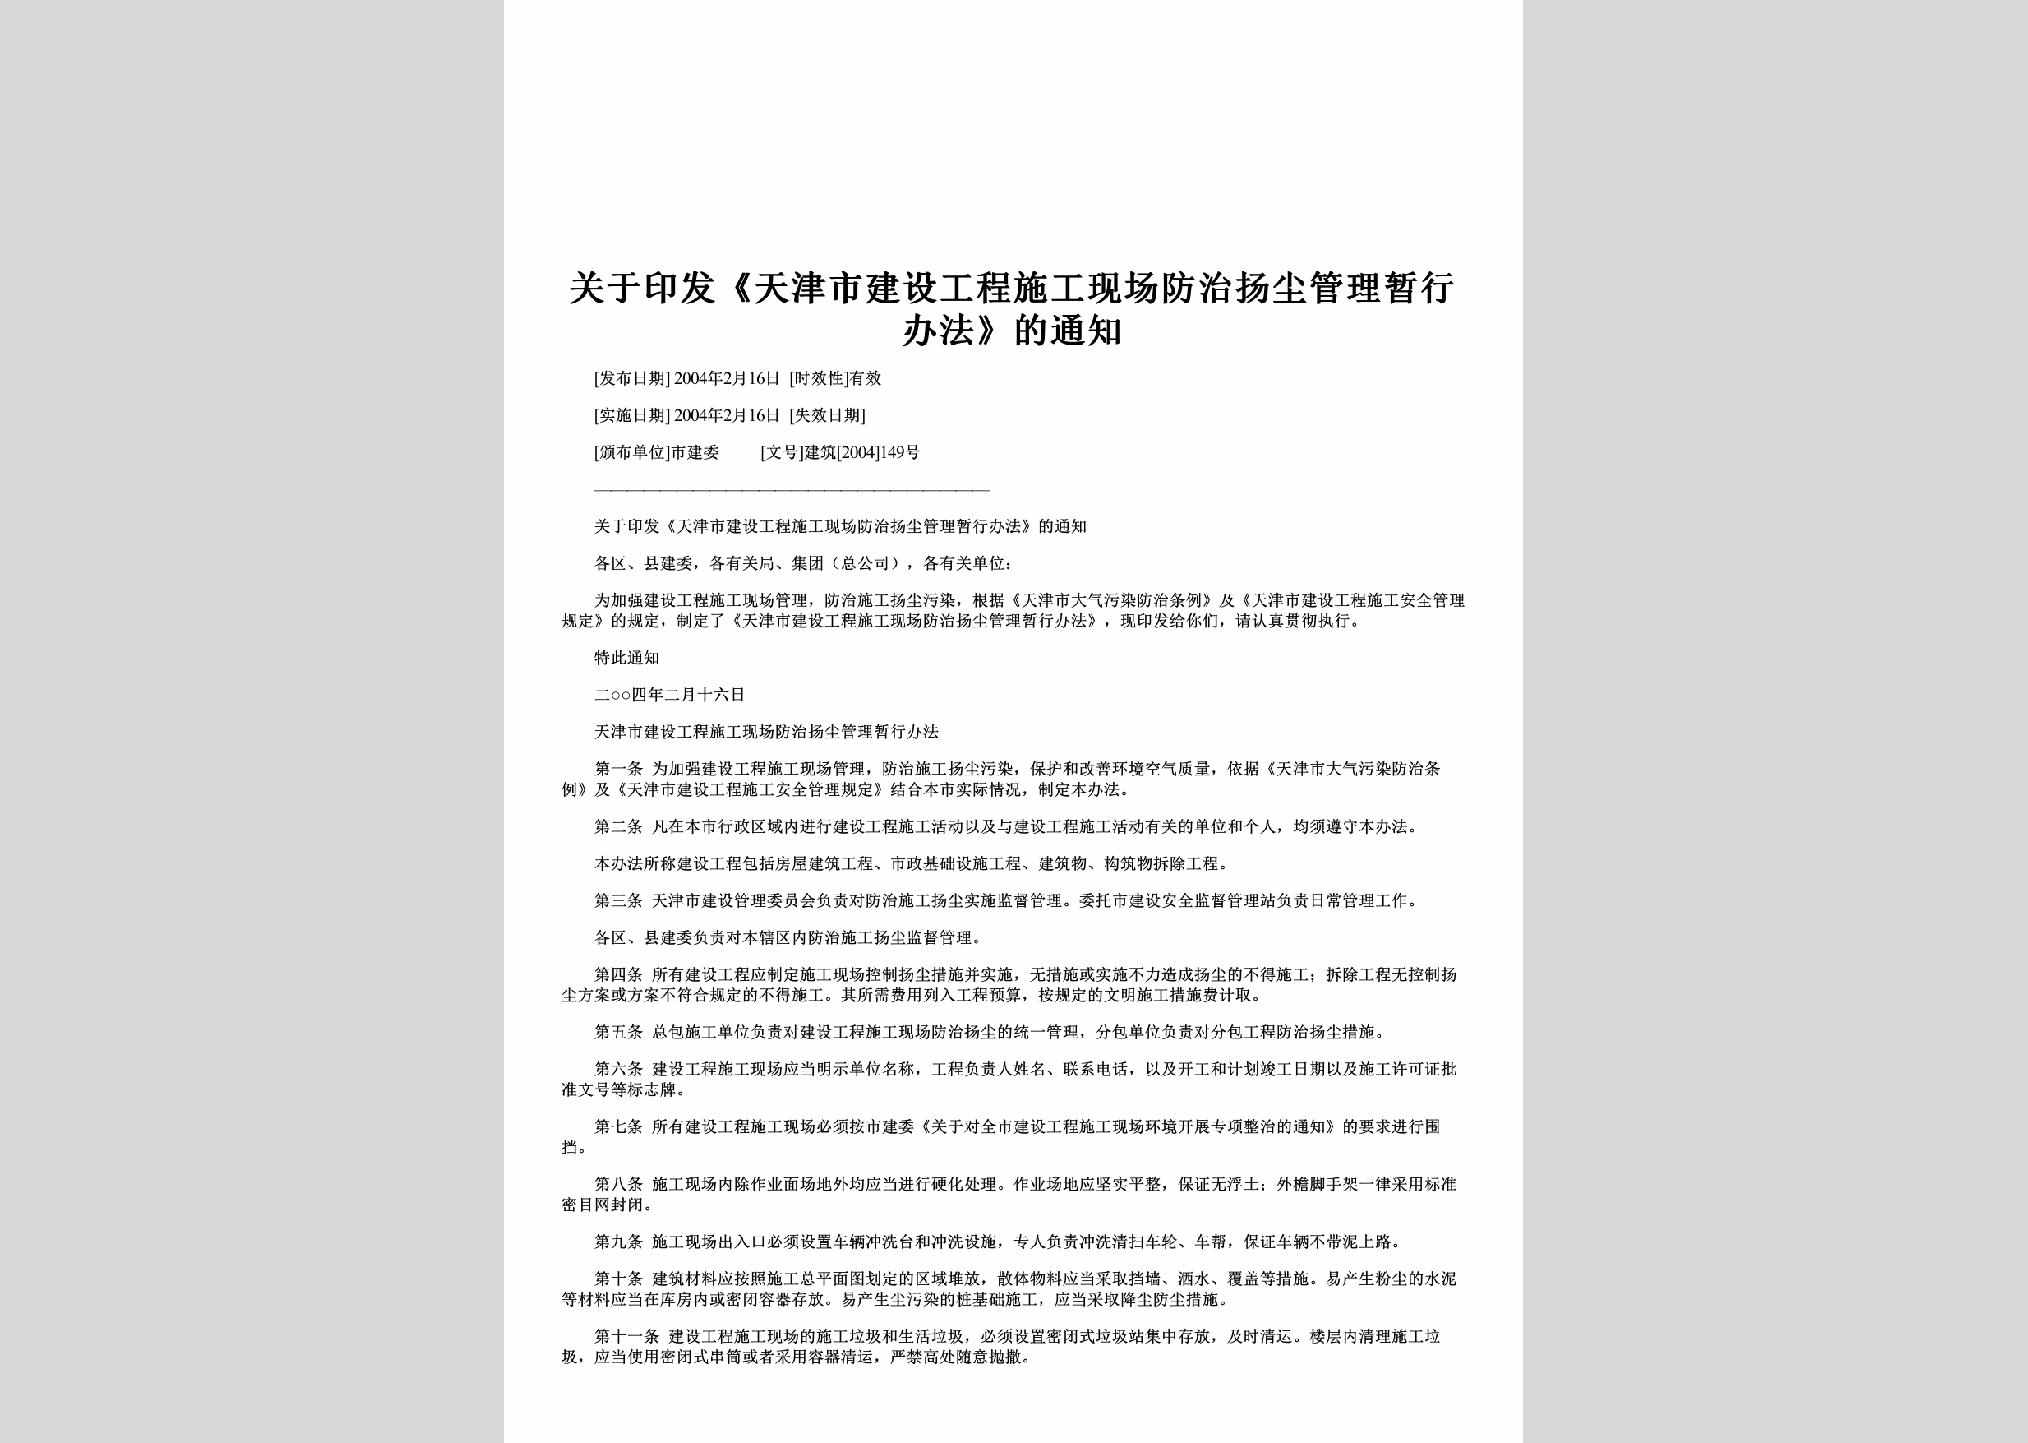 建筑[2004]149号：关于印发《天津市建设工程施工现场防治扬尘管理暂行办法》的通知